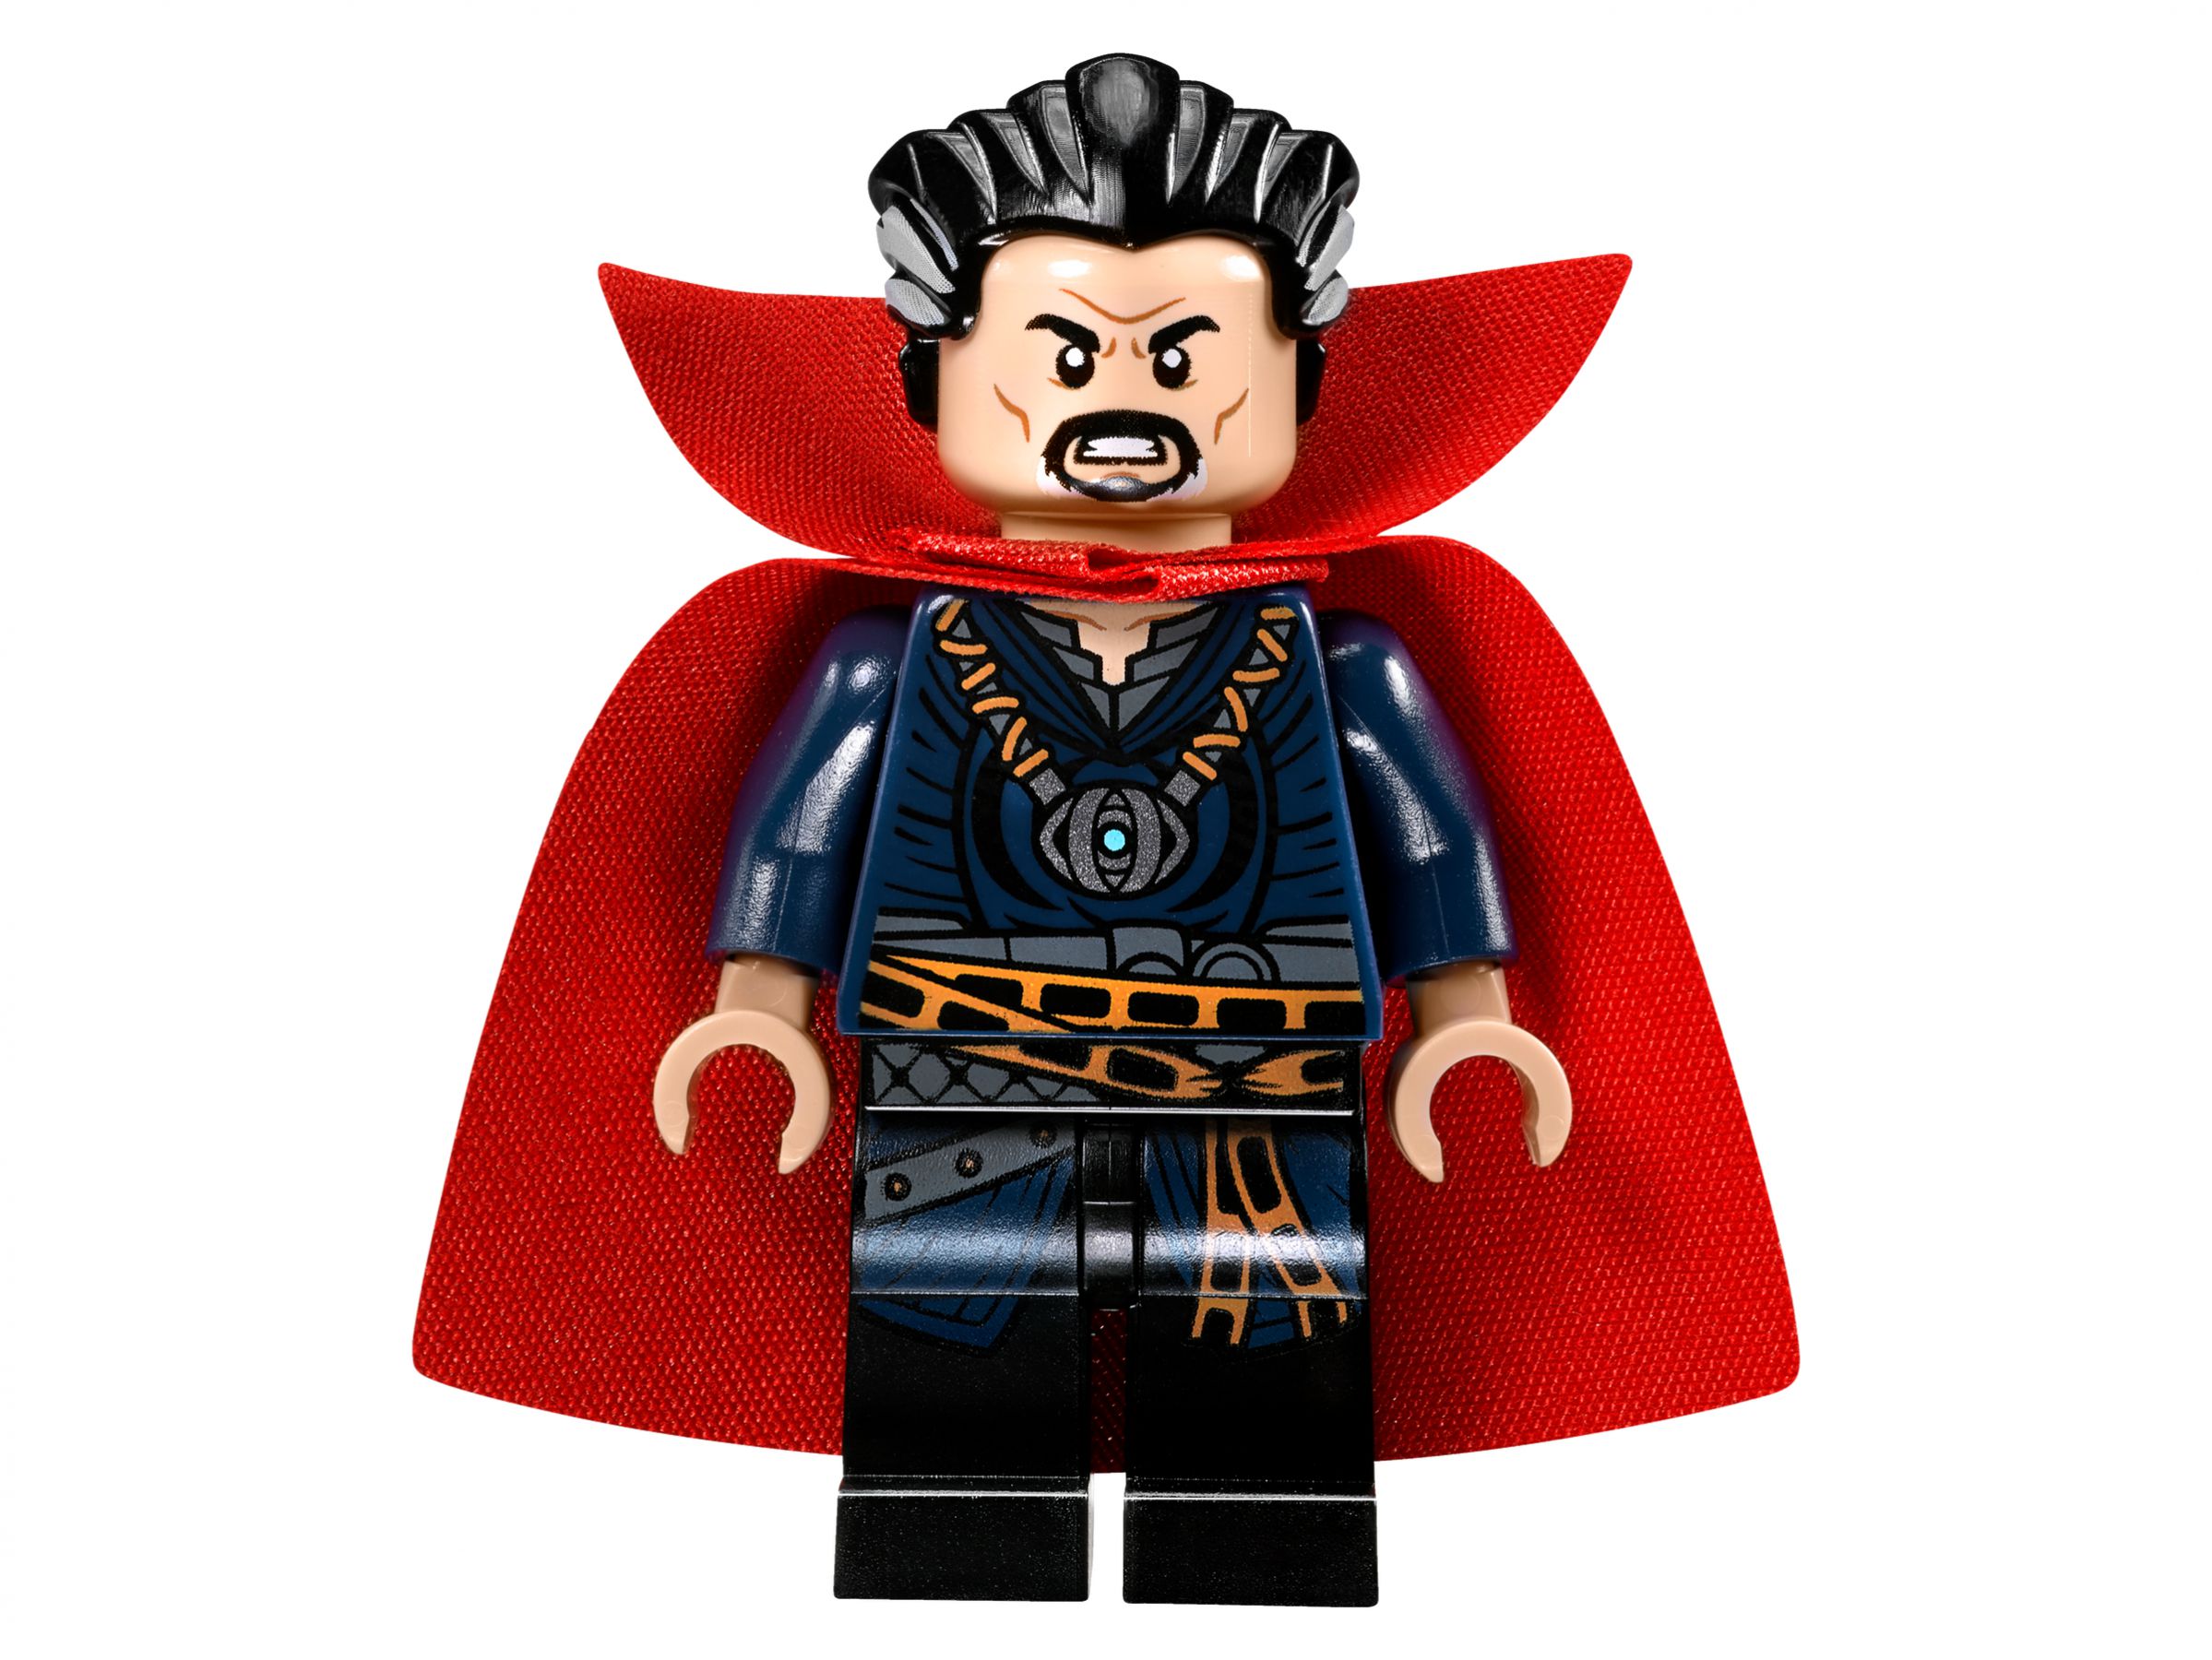 LEGO Super Heroes 76060 Doctor Strange und sein Sanctum Sanctorum LEGO_76060_alt8.jpg